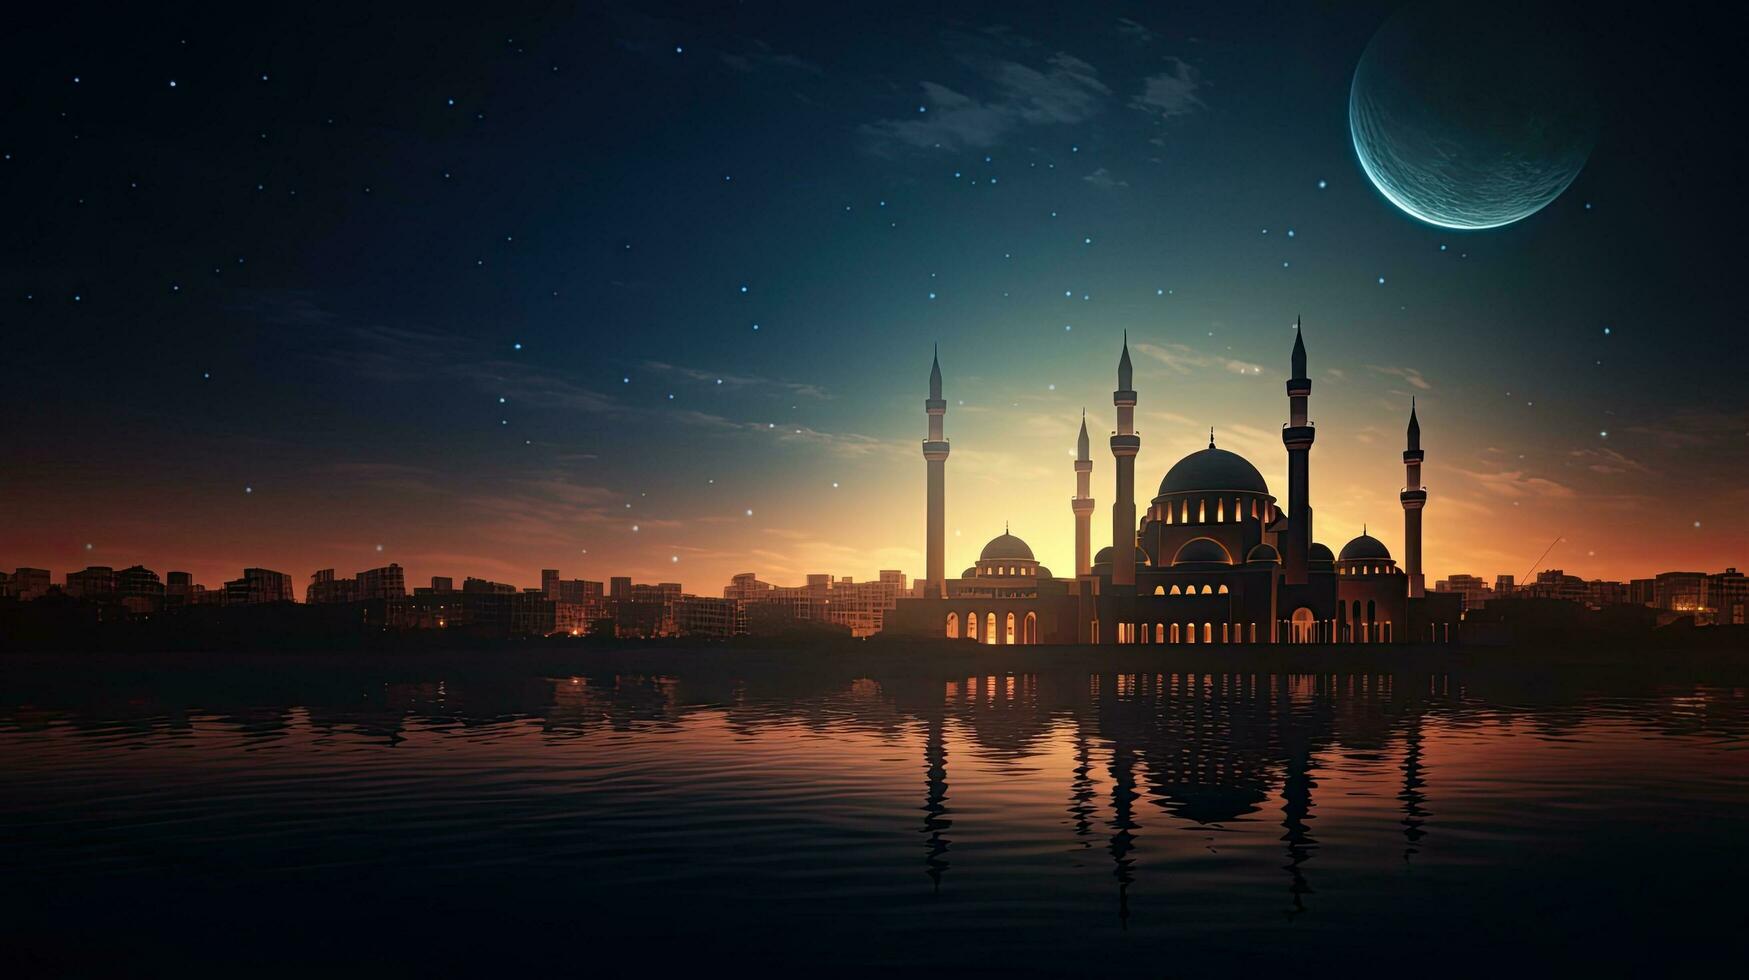 islamique mosquée à le coucher du soleil avec une magnifique lune dans le ciel création une saint et serein nuit photo